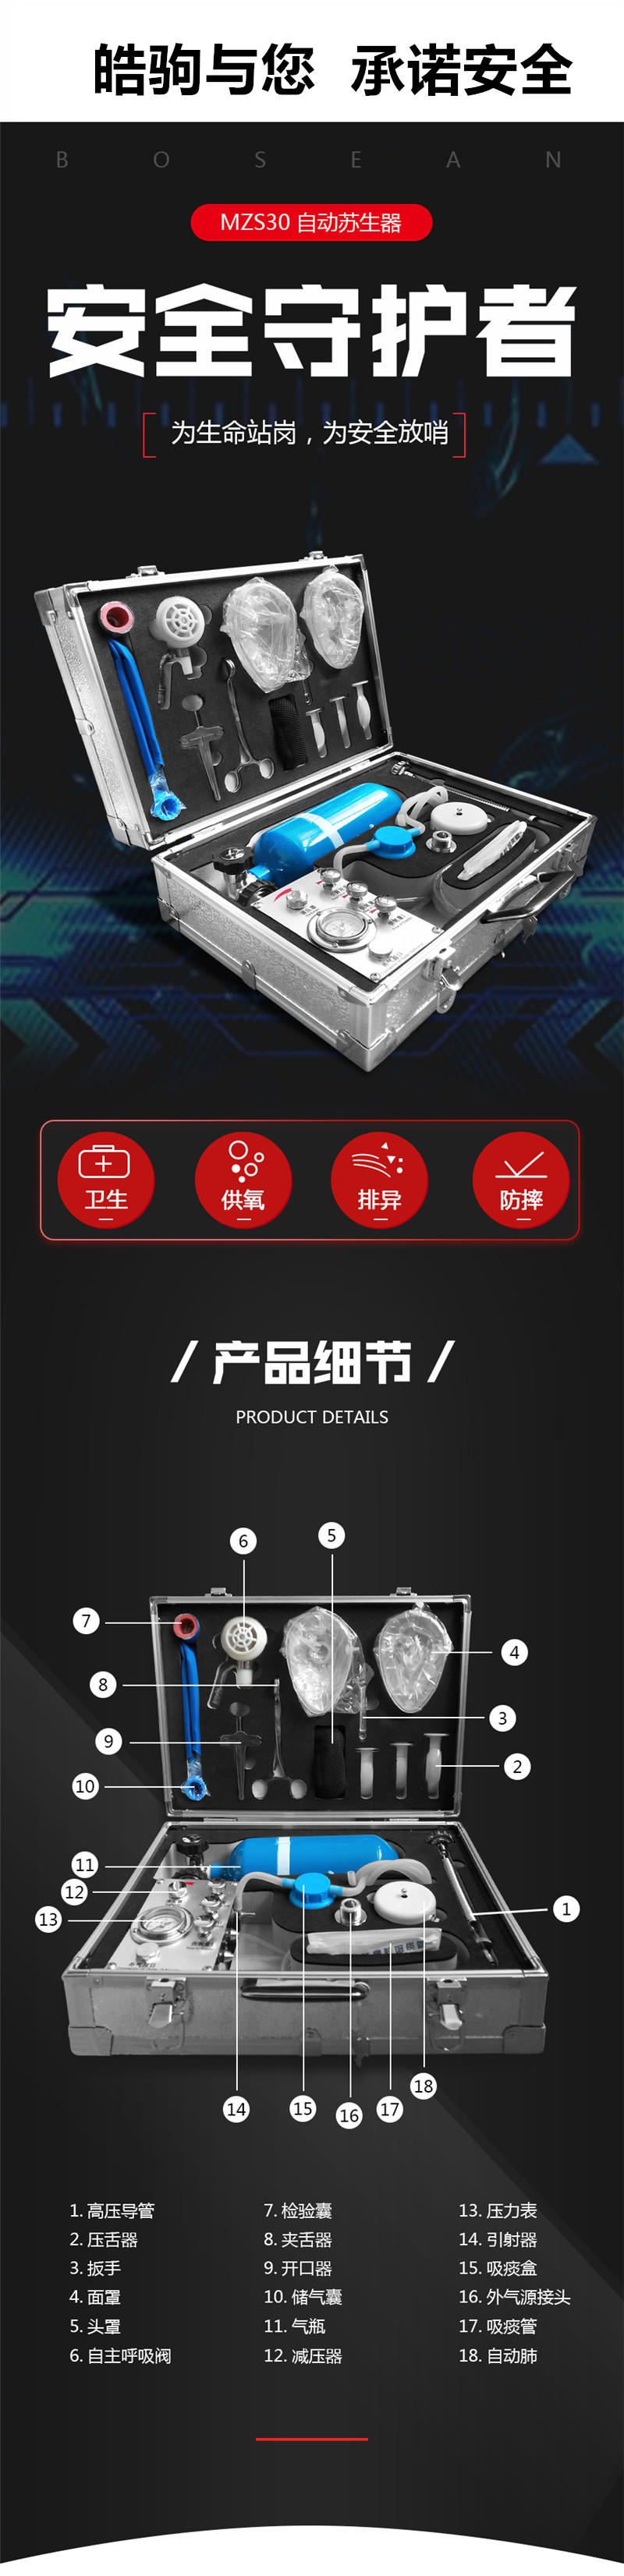 上海皓驹厂家供应MZS-30自动苏生器 矿用苏生器 正负压人工呼吸苏生器示例图3